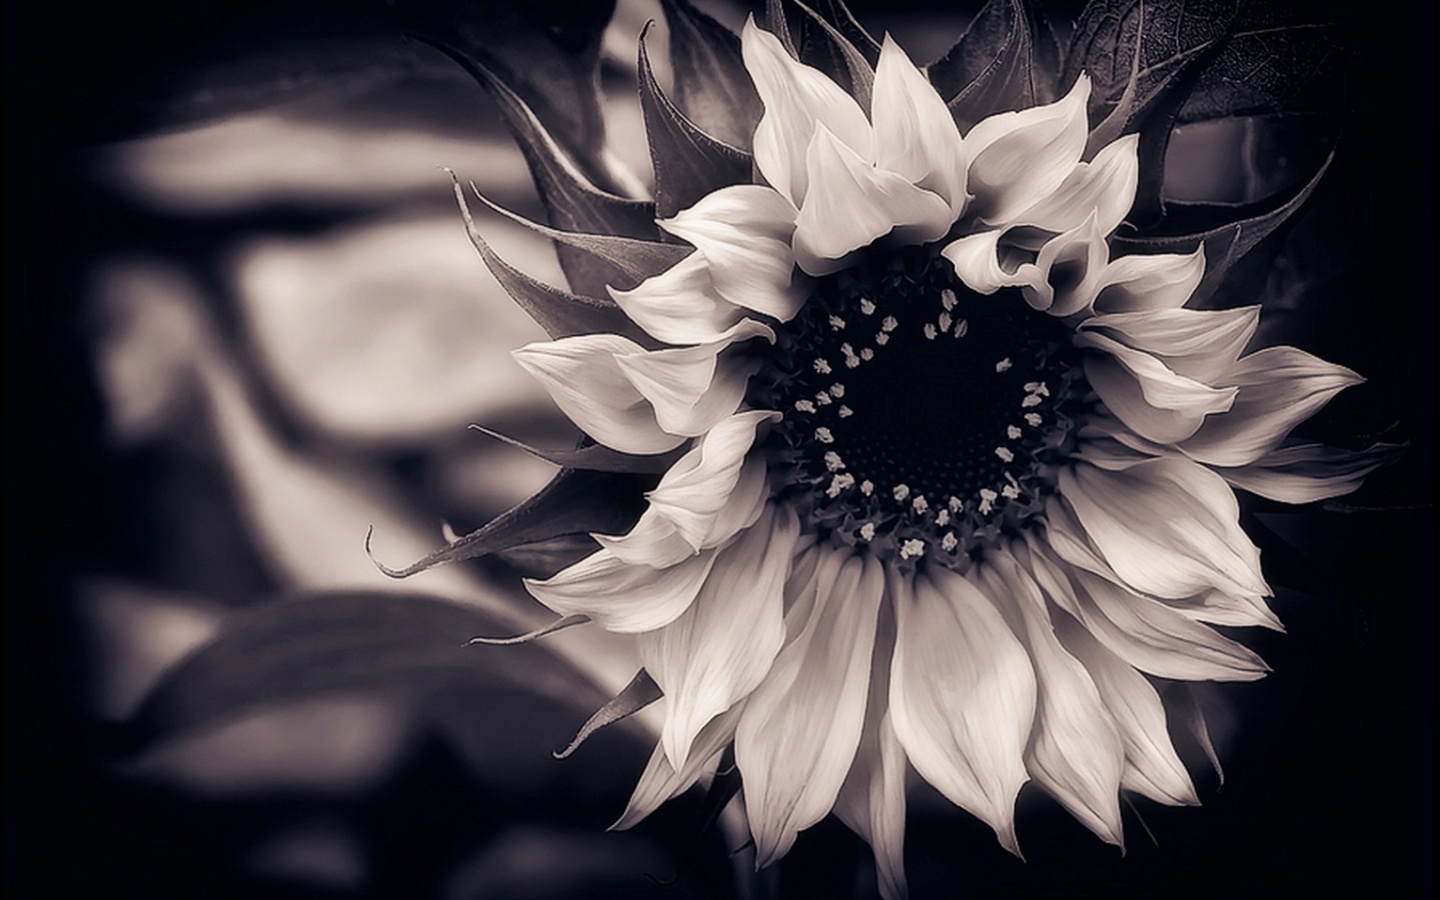 papel tapiz floral blanco y negro,fotografía monocroma,blanco,en blanco y negro,flor,negro